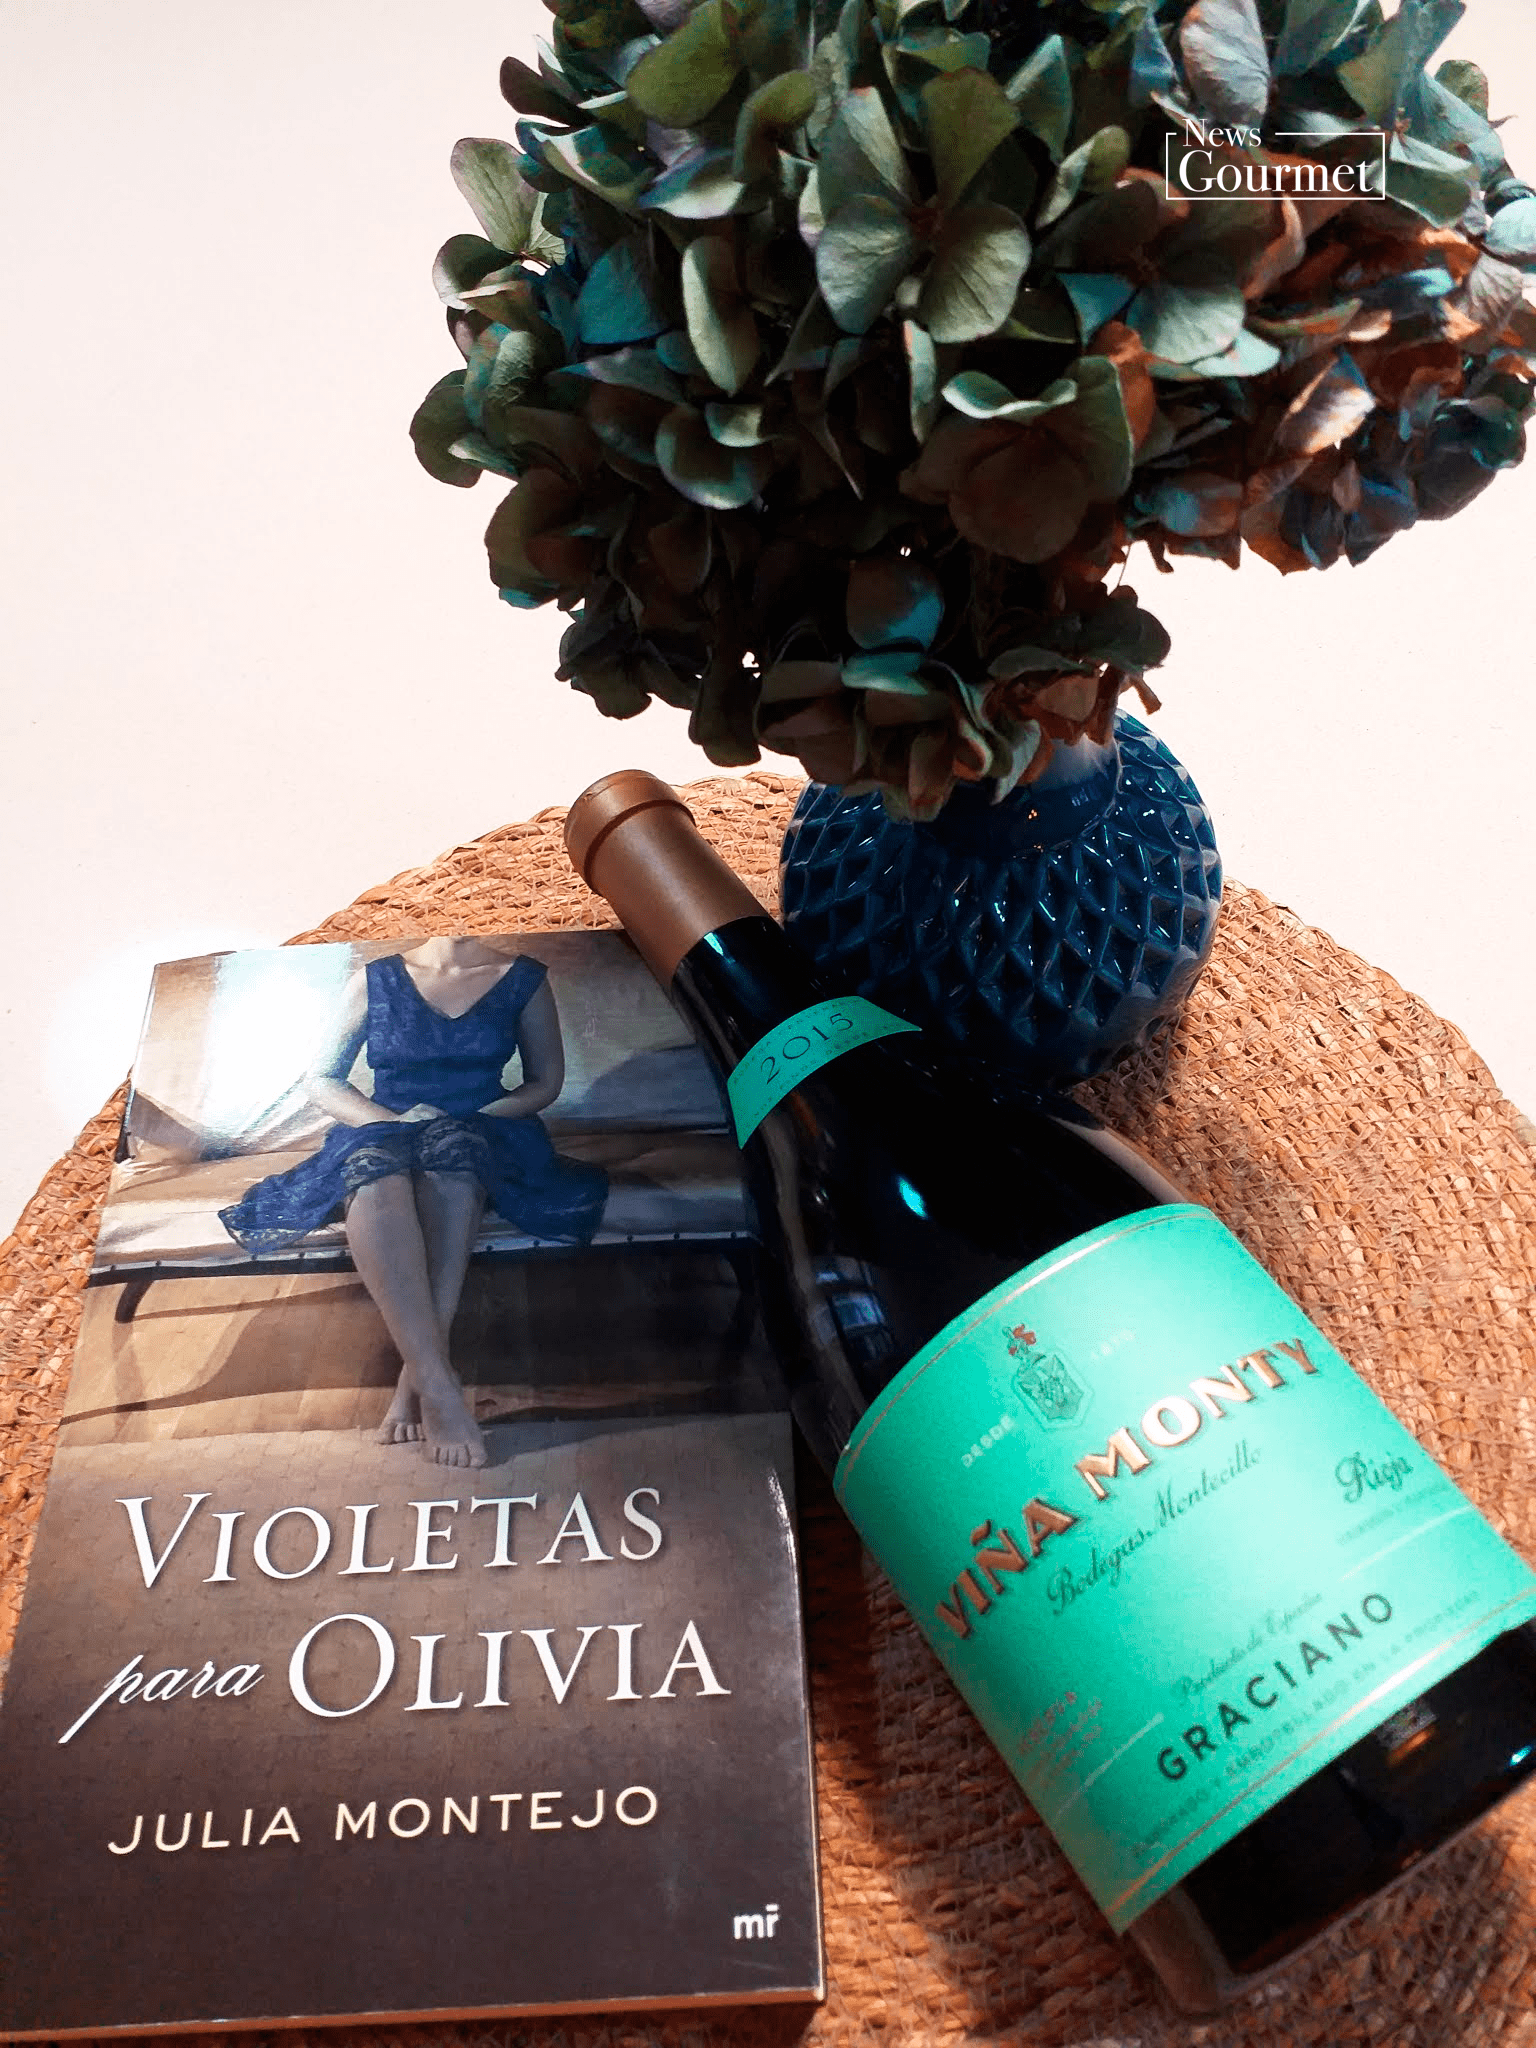 Qué libro me bebo | Violetas para Oliva & Viña Monty Graciano 2015